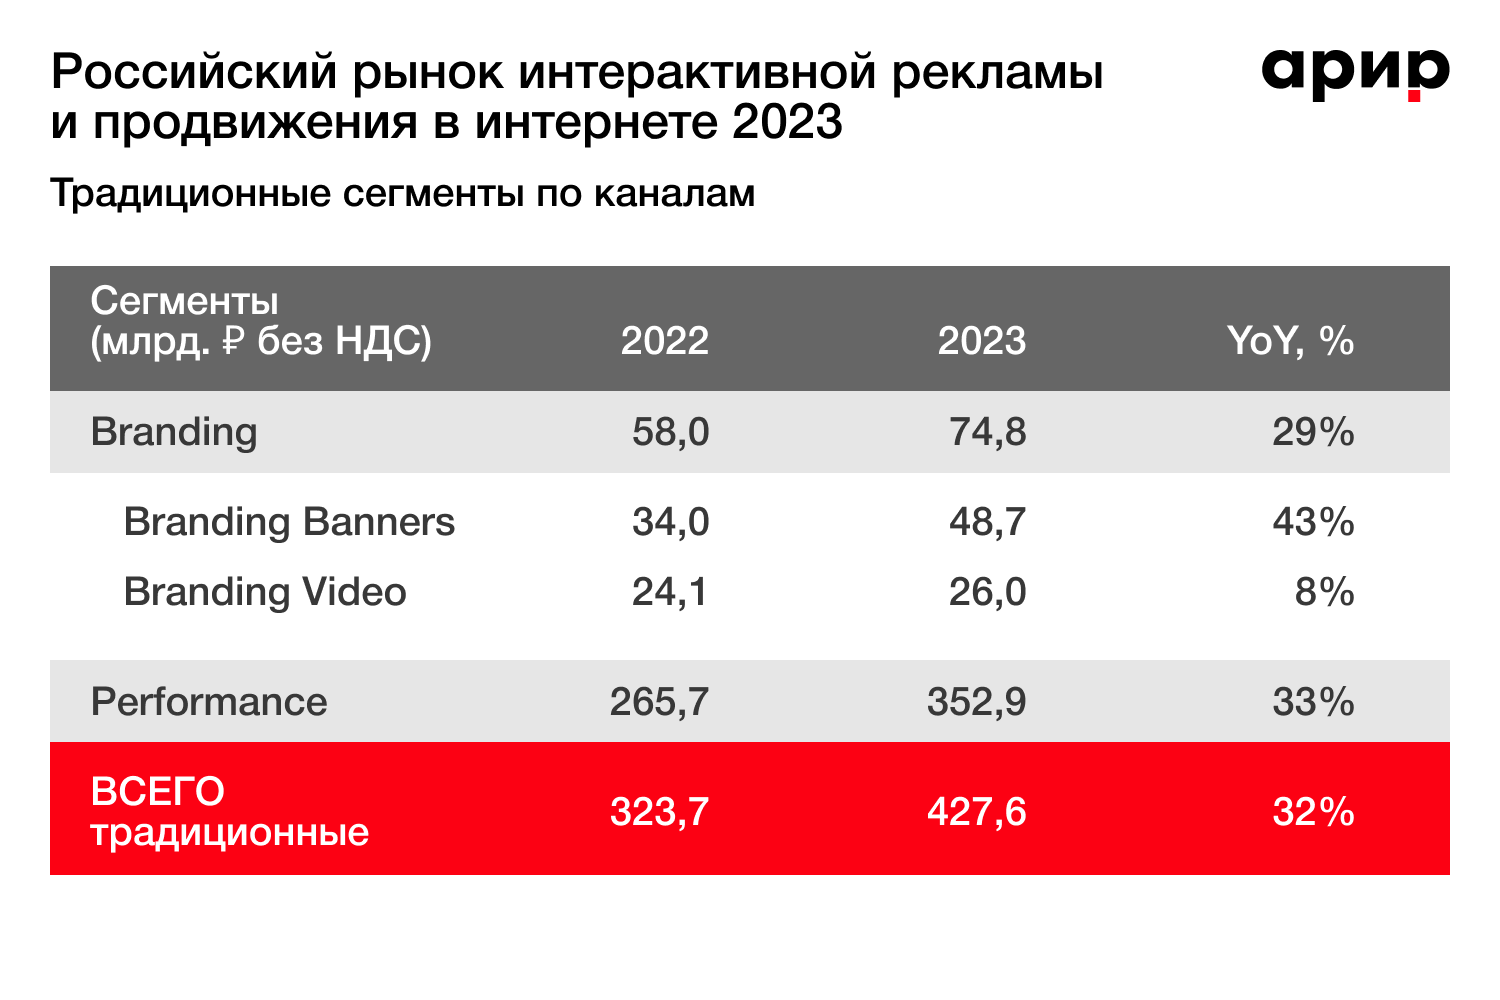 ВИРИР: объем российского рынка интерактивной рекламы и продвижения в Интернете в 2023 году увеличился на 55% | Новости